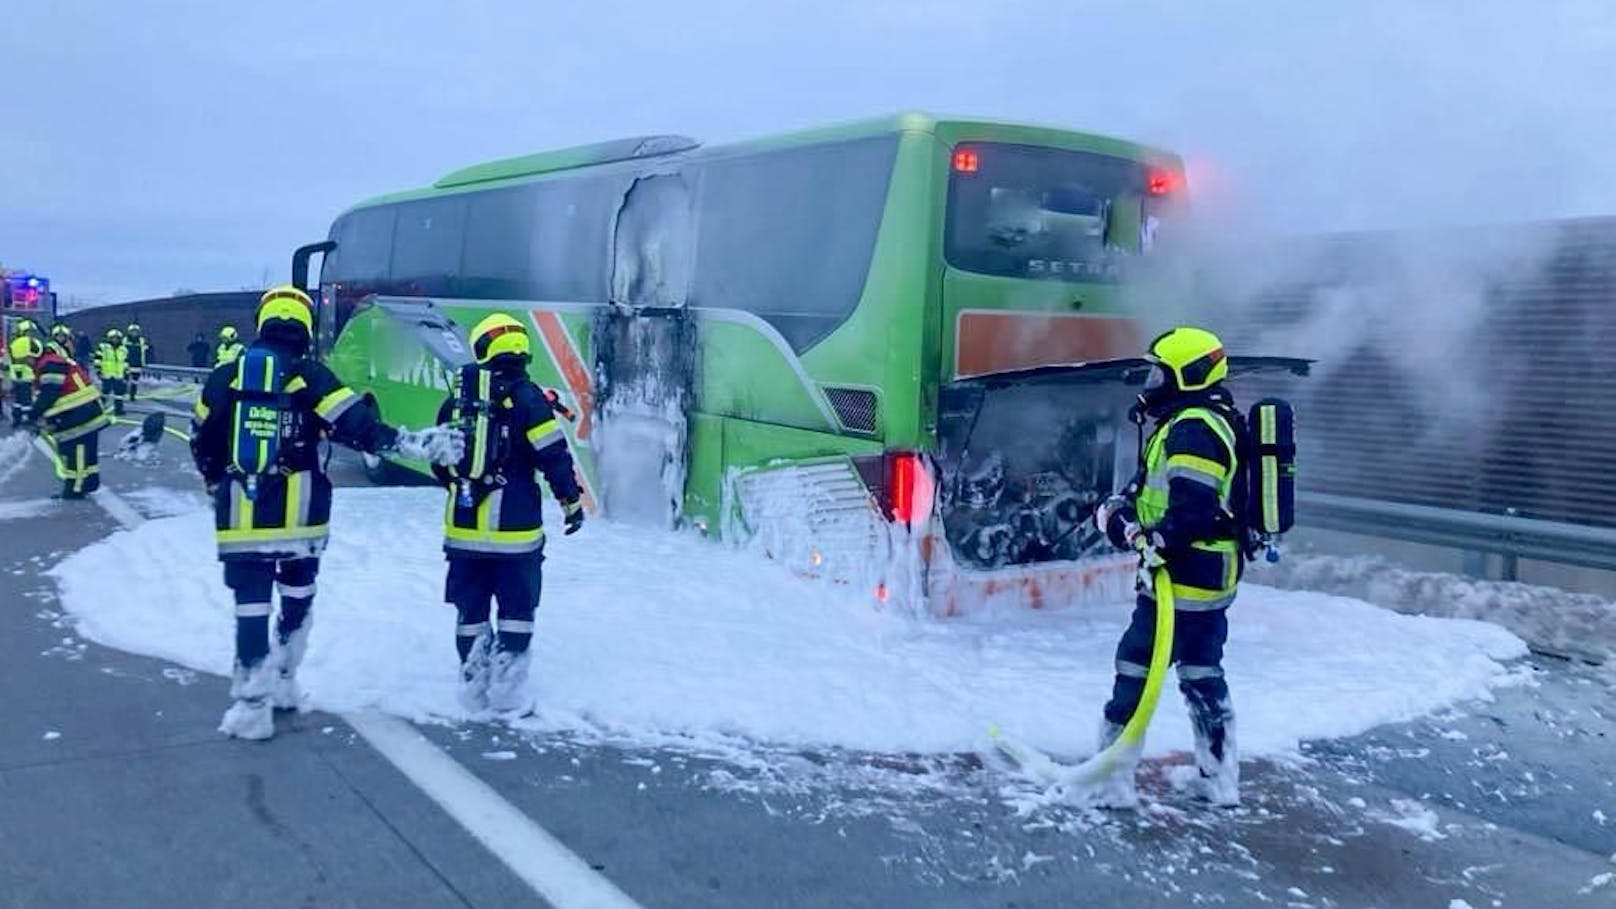 Feuer-Alarm auf A5! Flixbus brennt mitten auf Autobahn